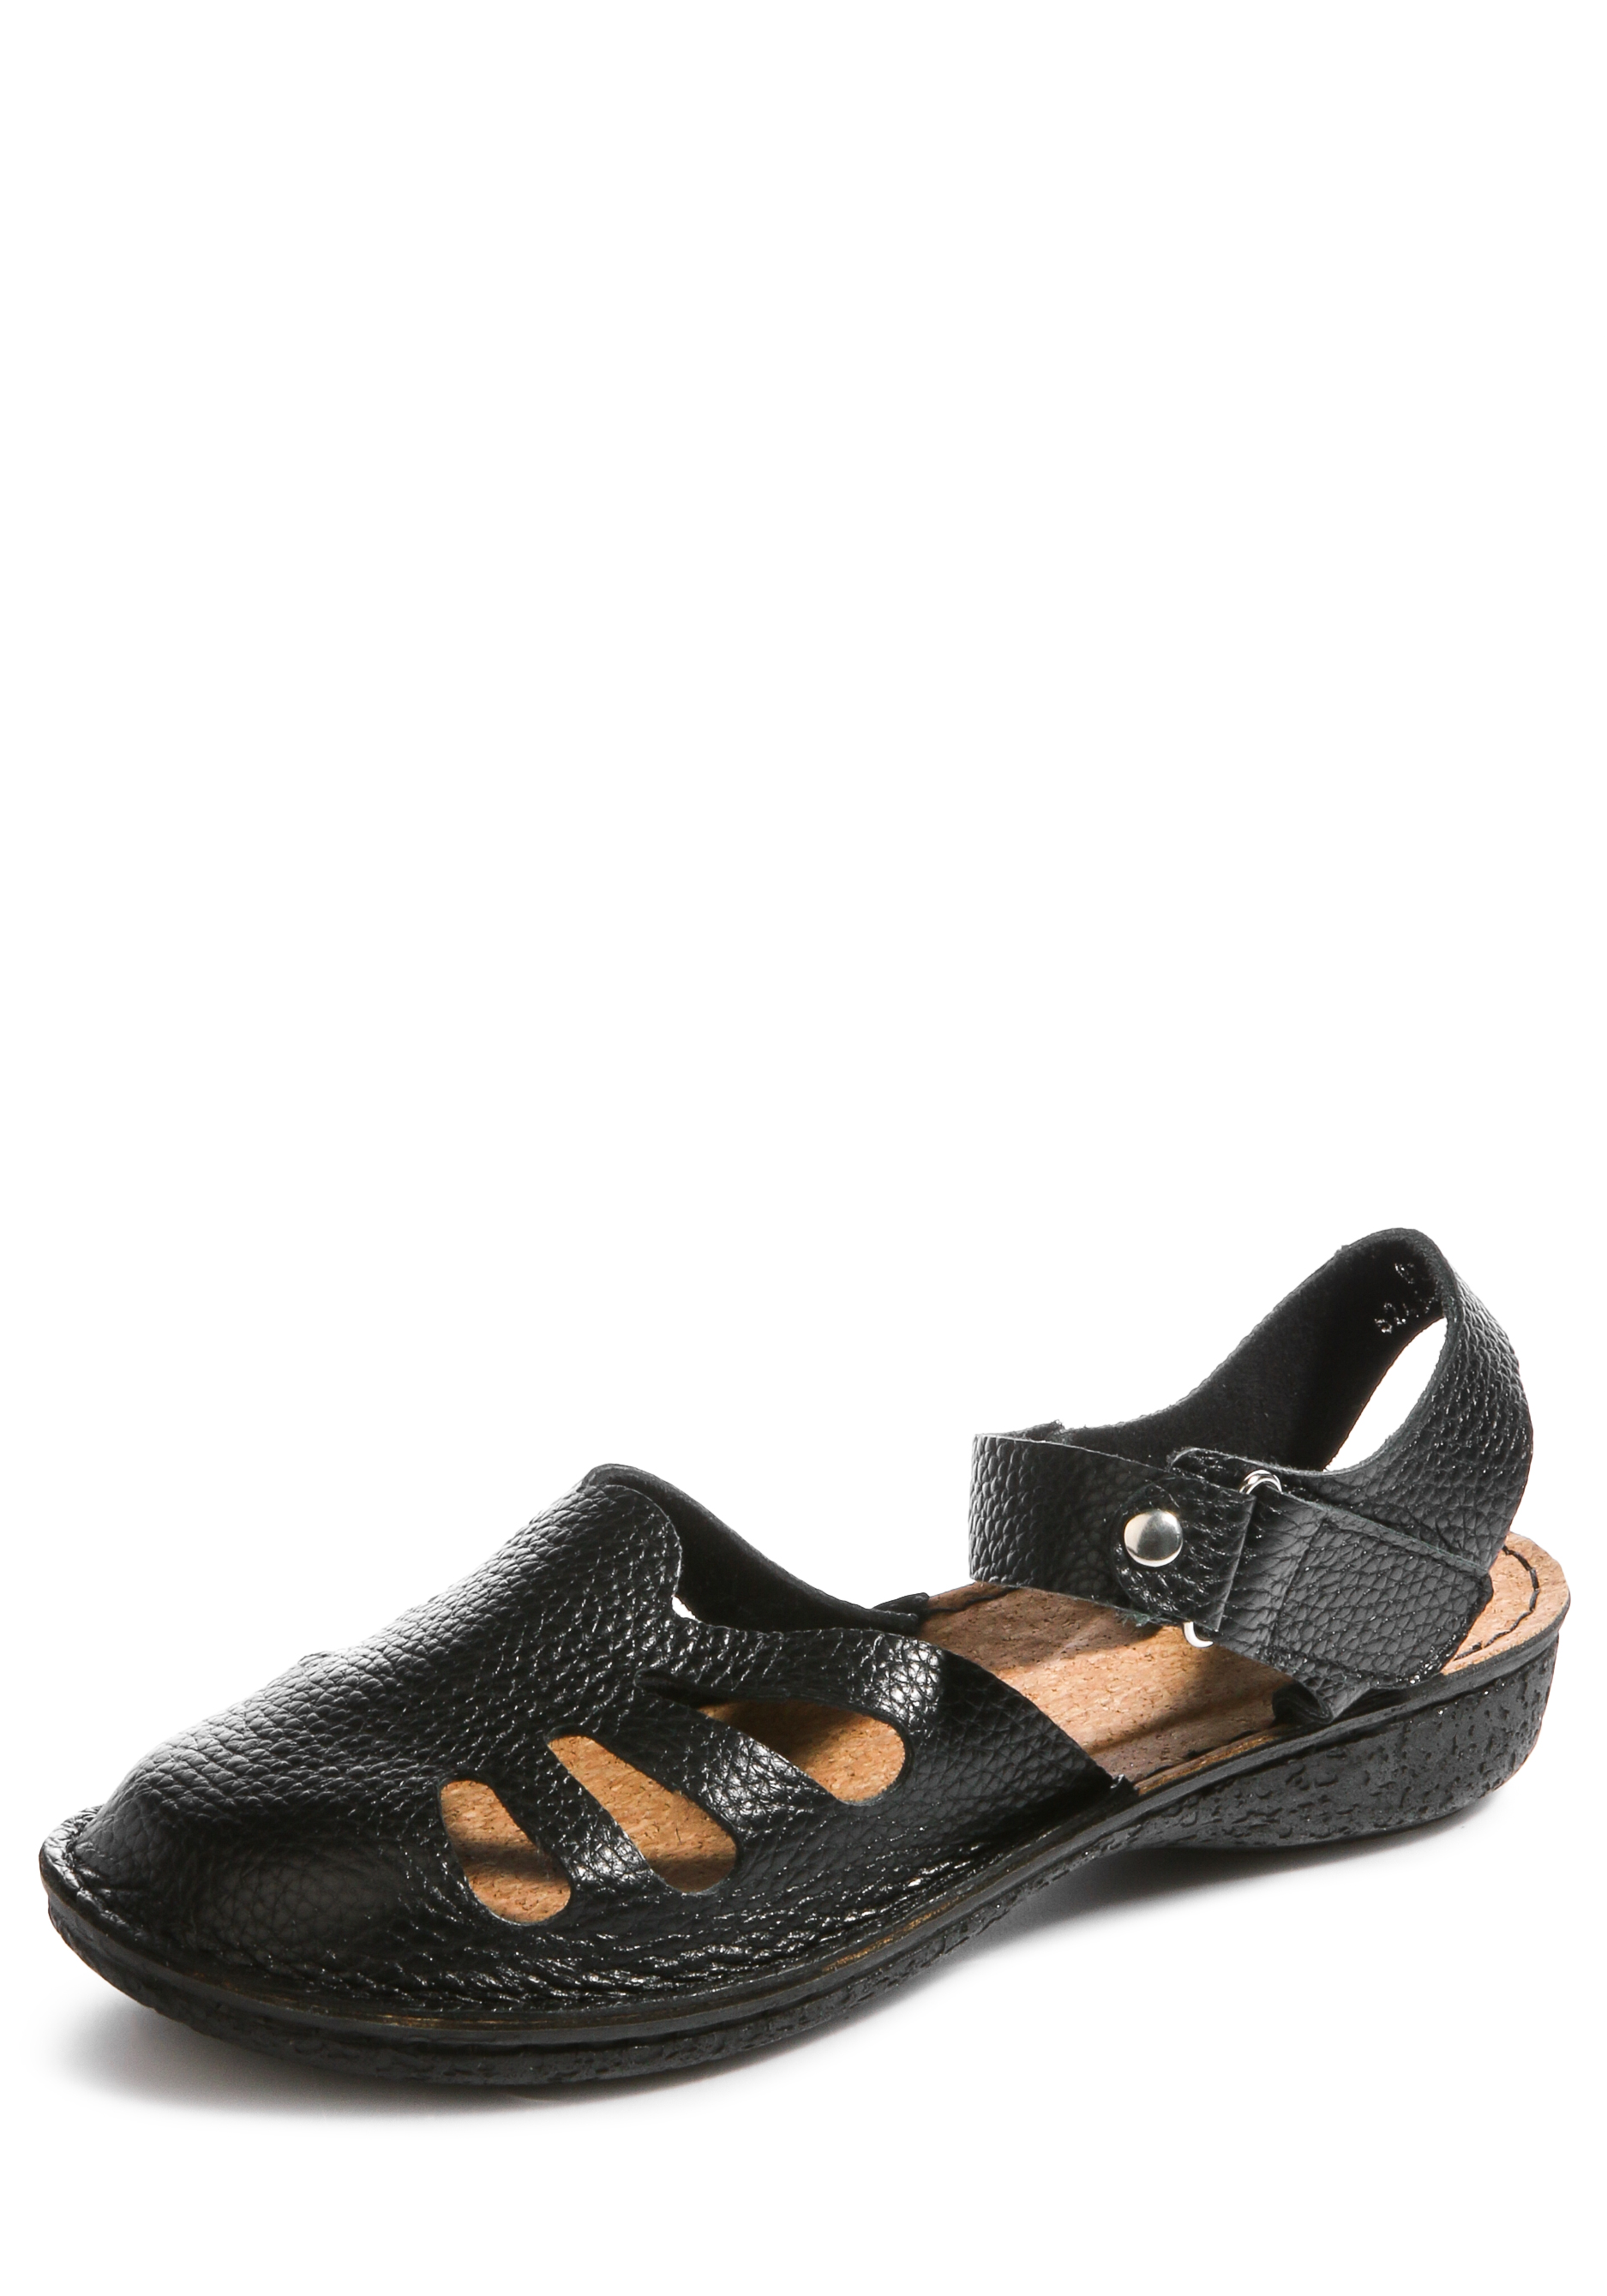 Туфли женские "Катрин" Almi, размер 41, цвет черный